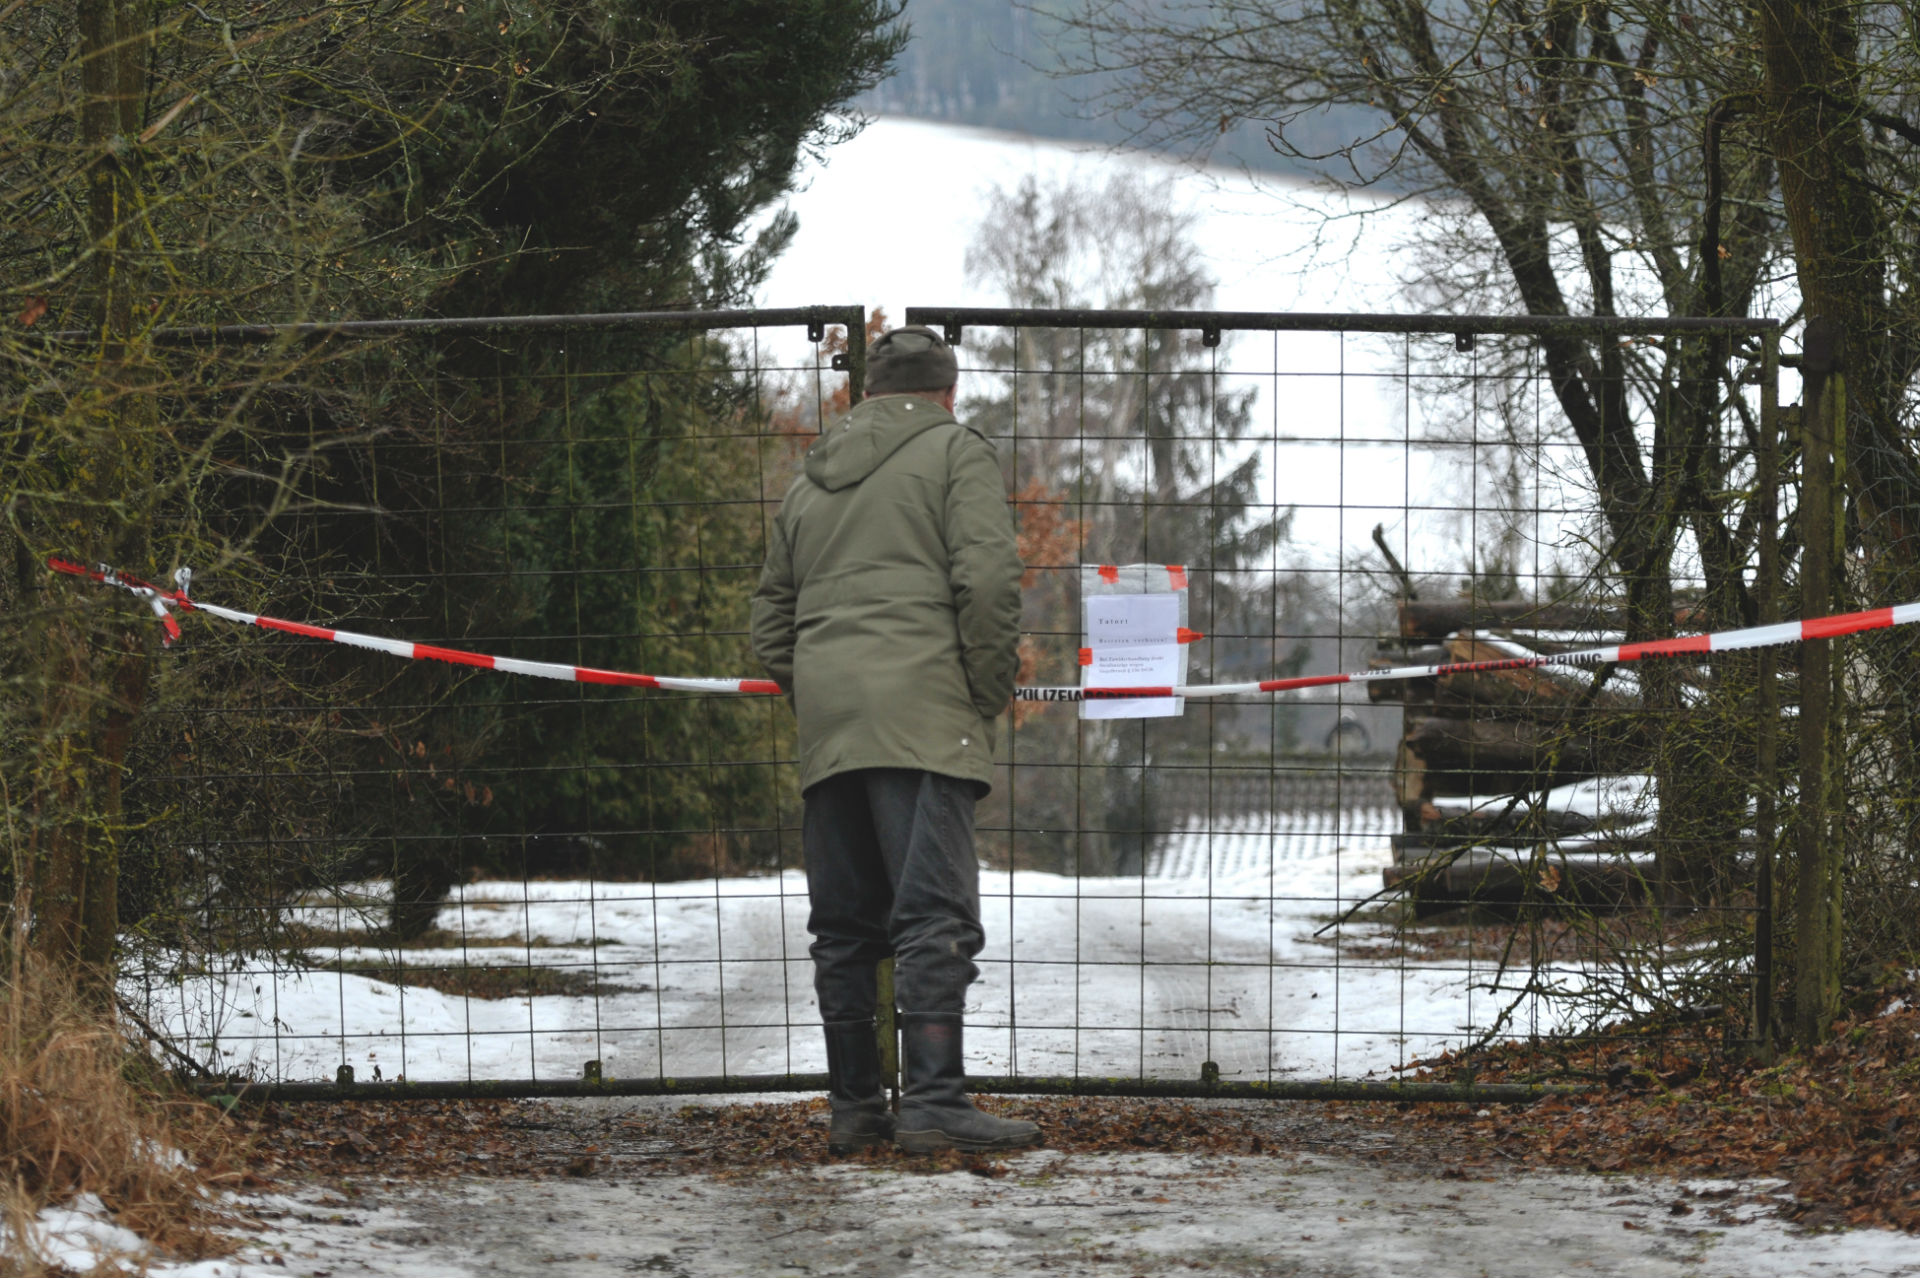 Seis adolescentes aparecen muertos en una cabaña en Alemania